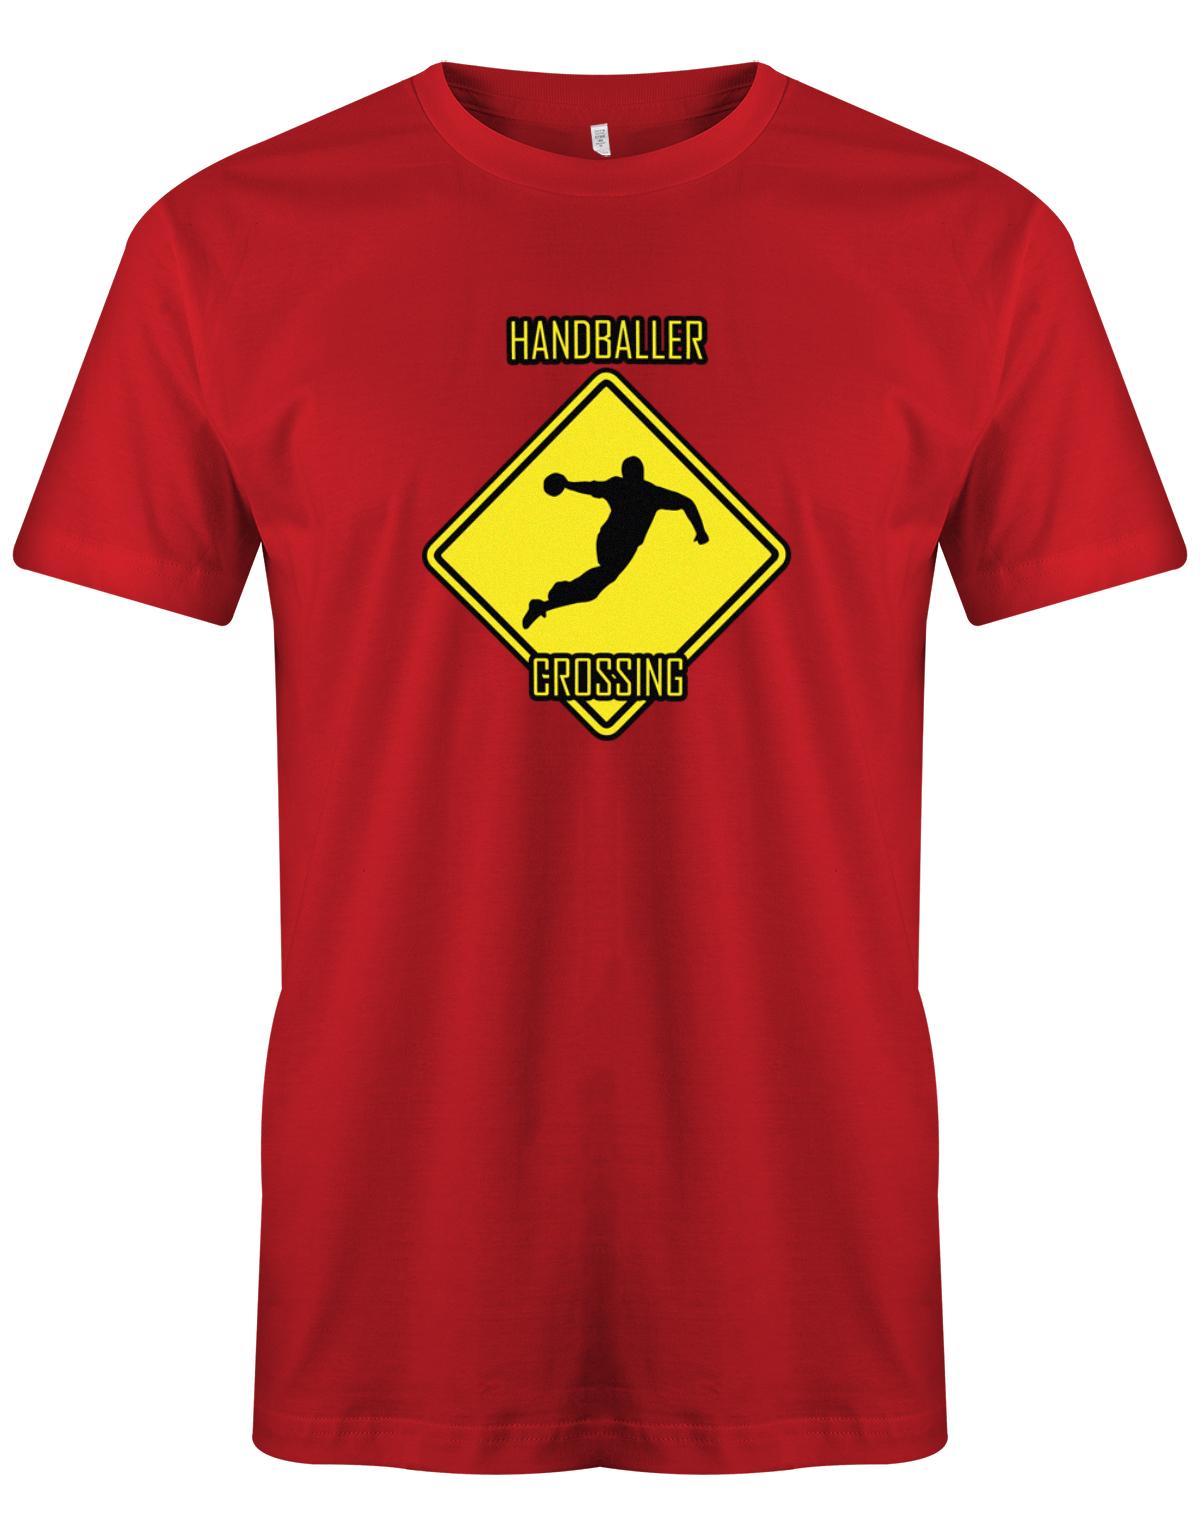 HAndballer-Crossing-Handball-Shirt-Herren-rot